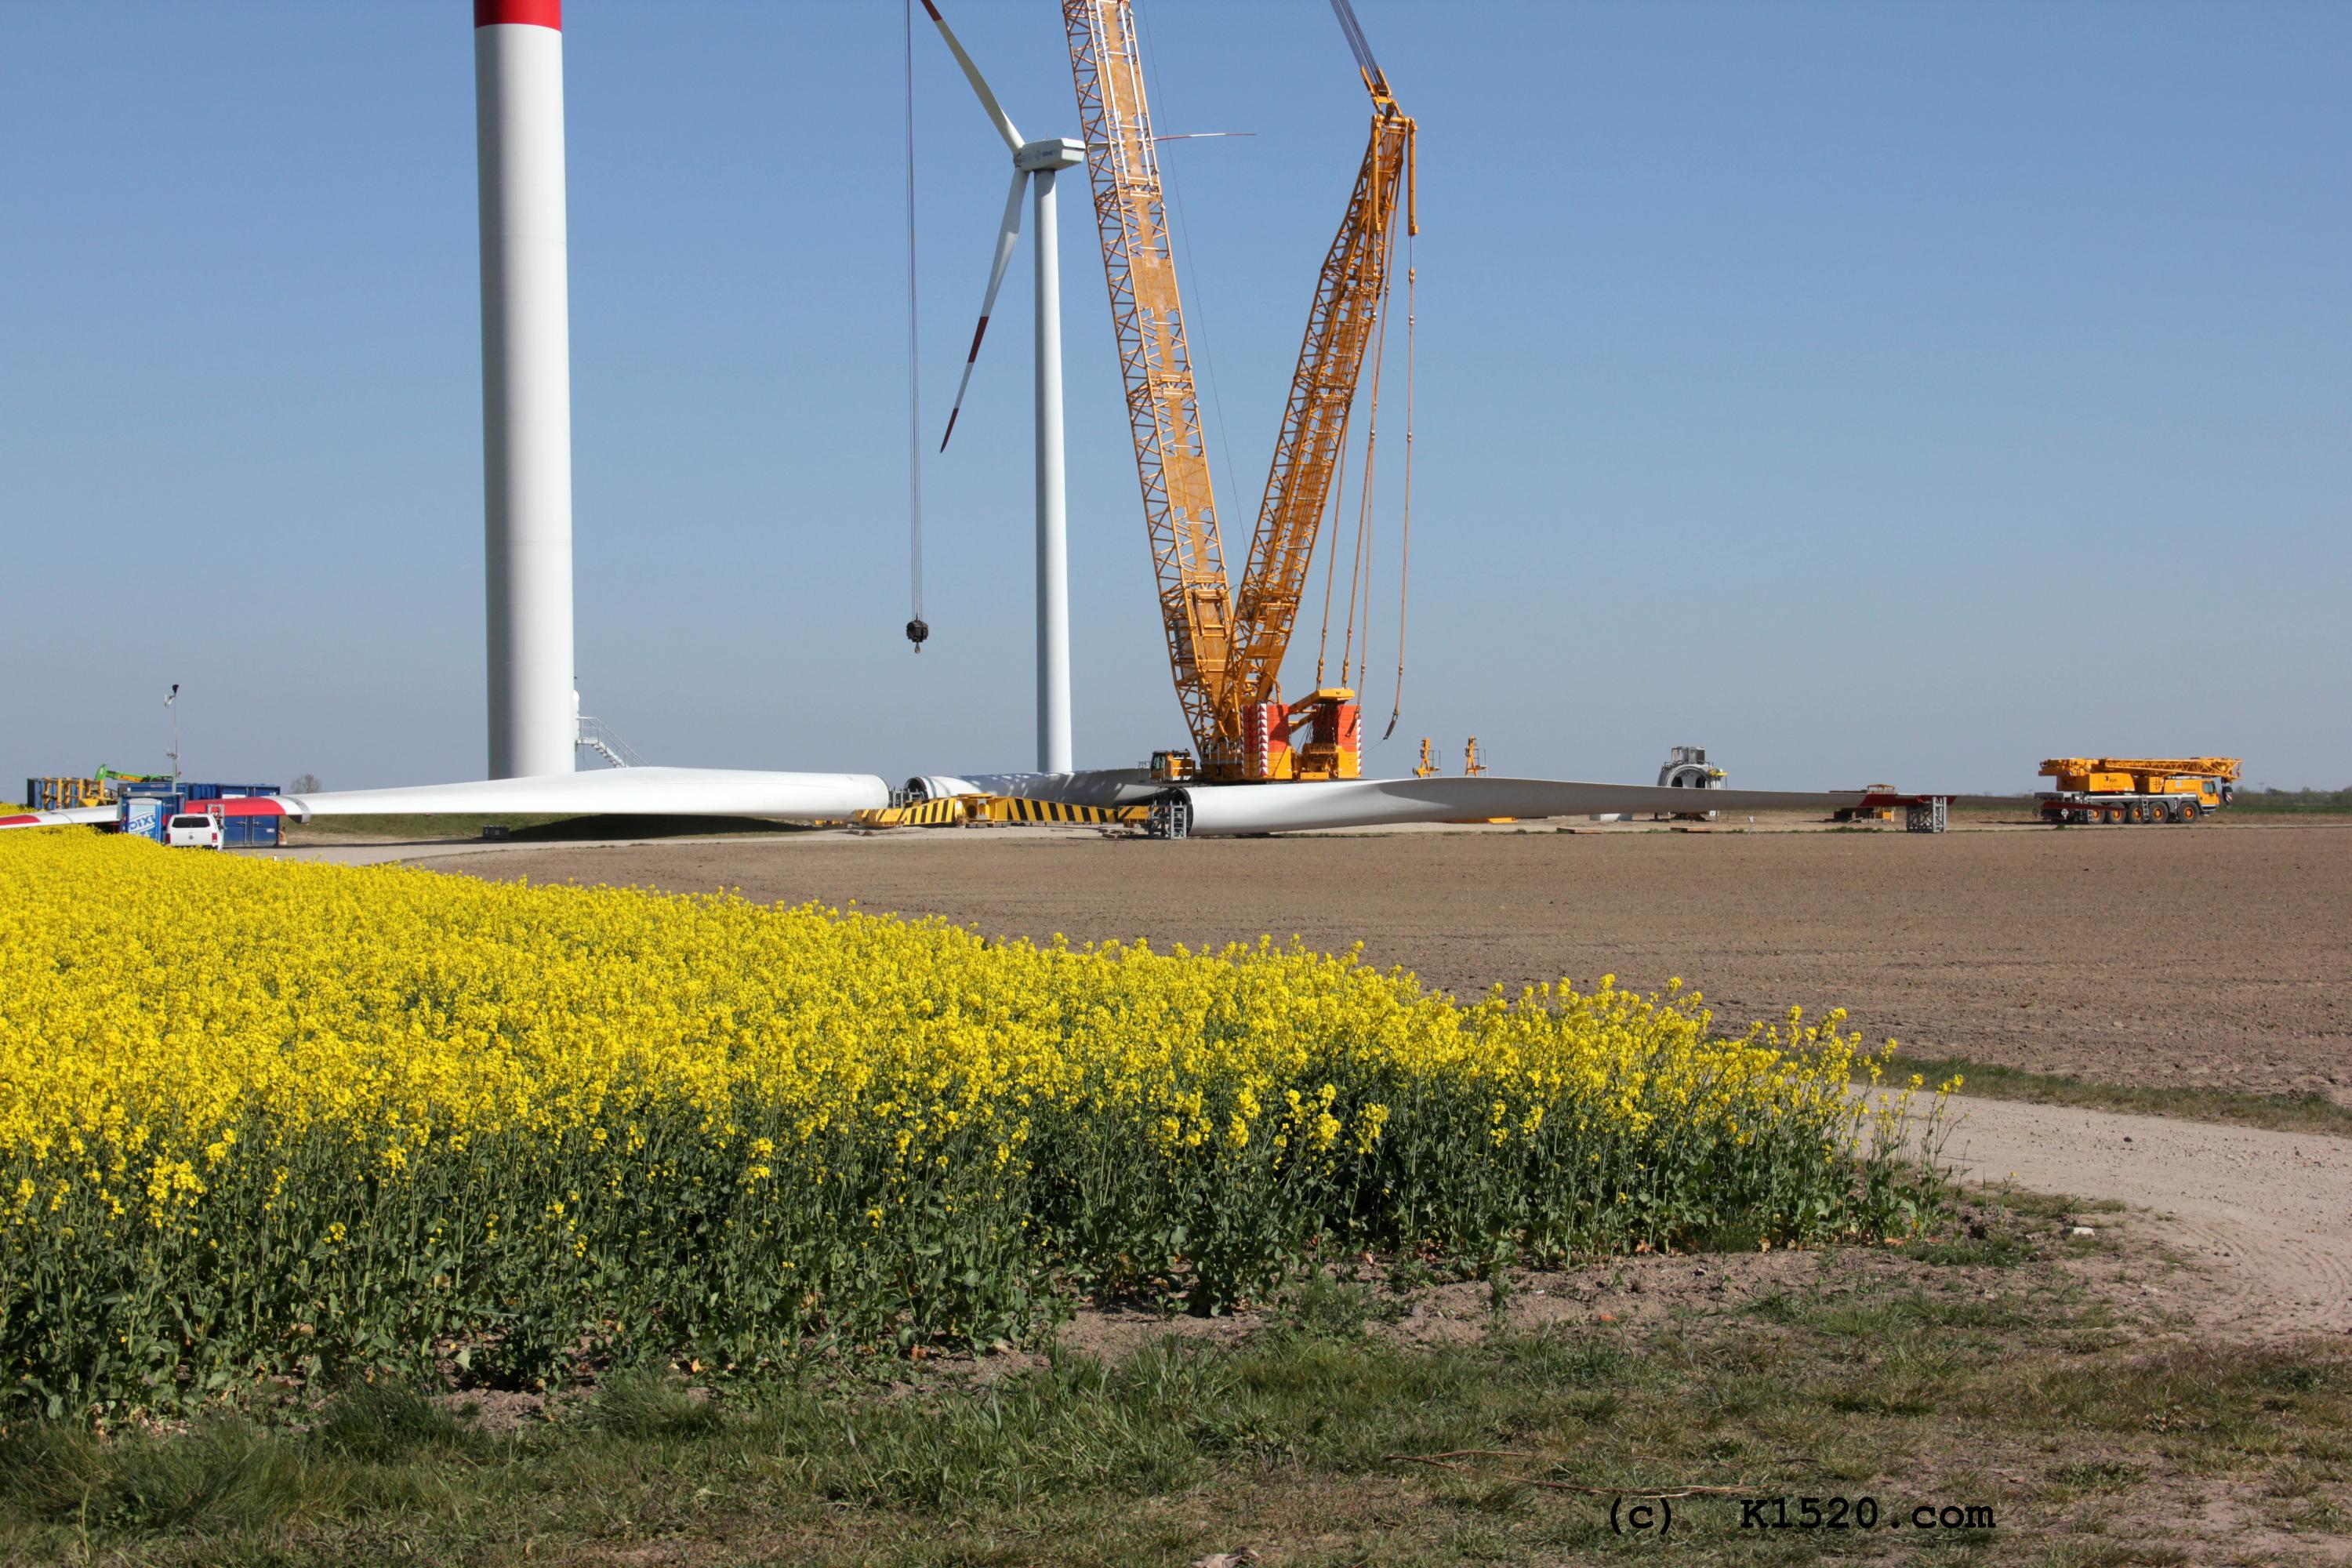 Reparatur Windrder im Windpark Arneburg/Elbe 04/2020,
  Kraneinsatz, Grenvergleich PKW und Kran